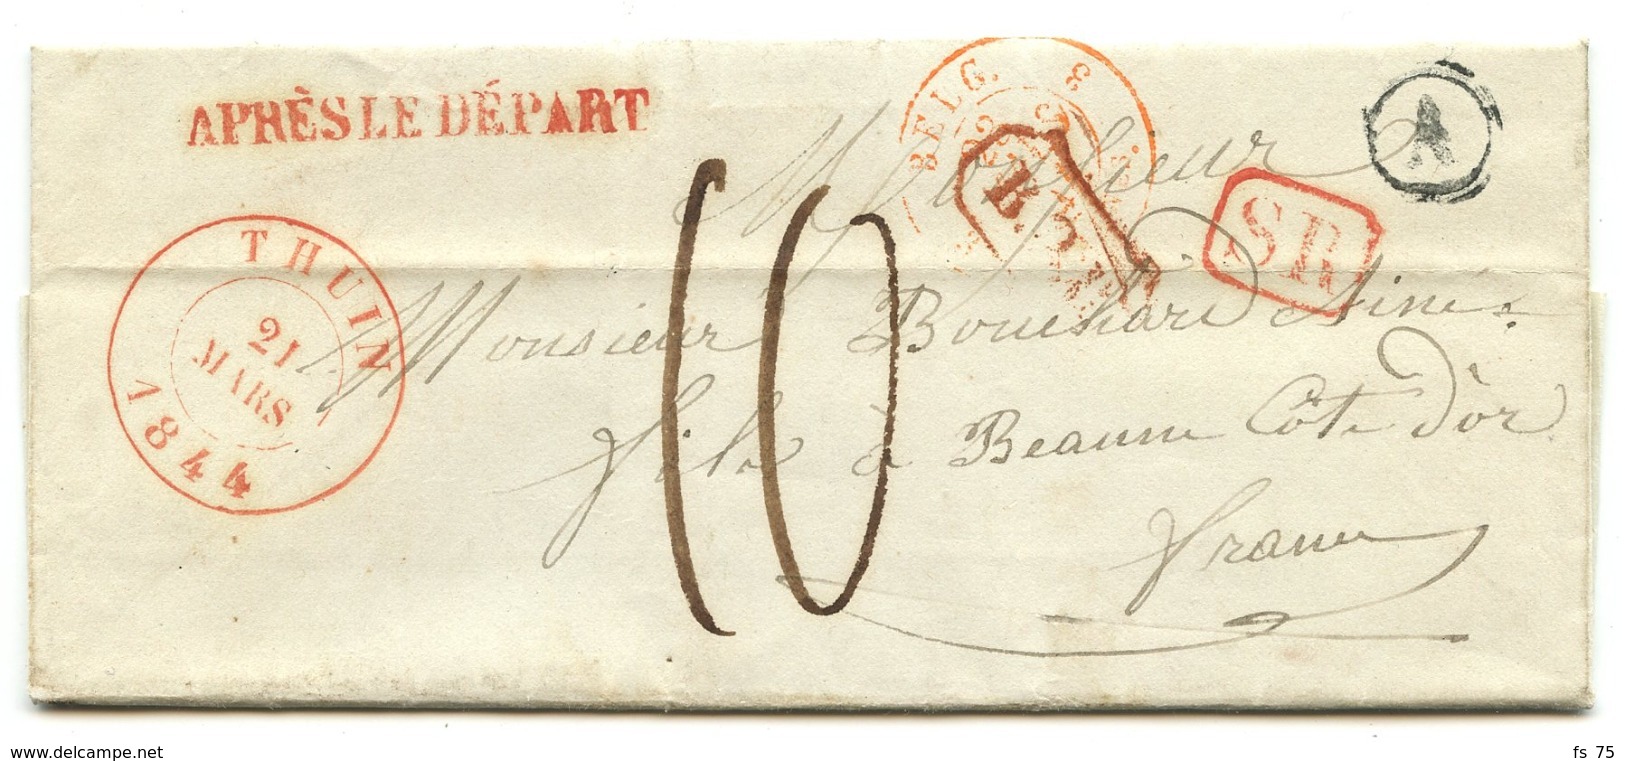 BELGIQUE - CAD THUIN + SR + BOITE A SUR LETTRE AVEC TEXTE DE GOZE POUR LA FRANCE, 1844 - 1830-1849 (Belgique Indépendante)